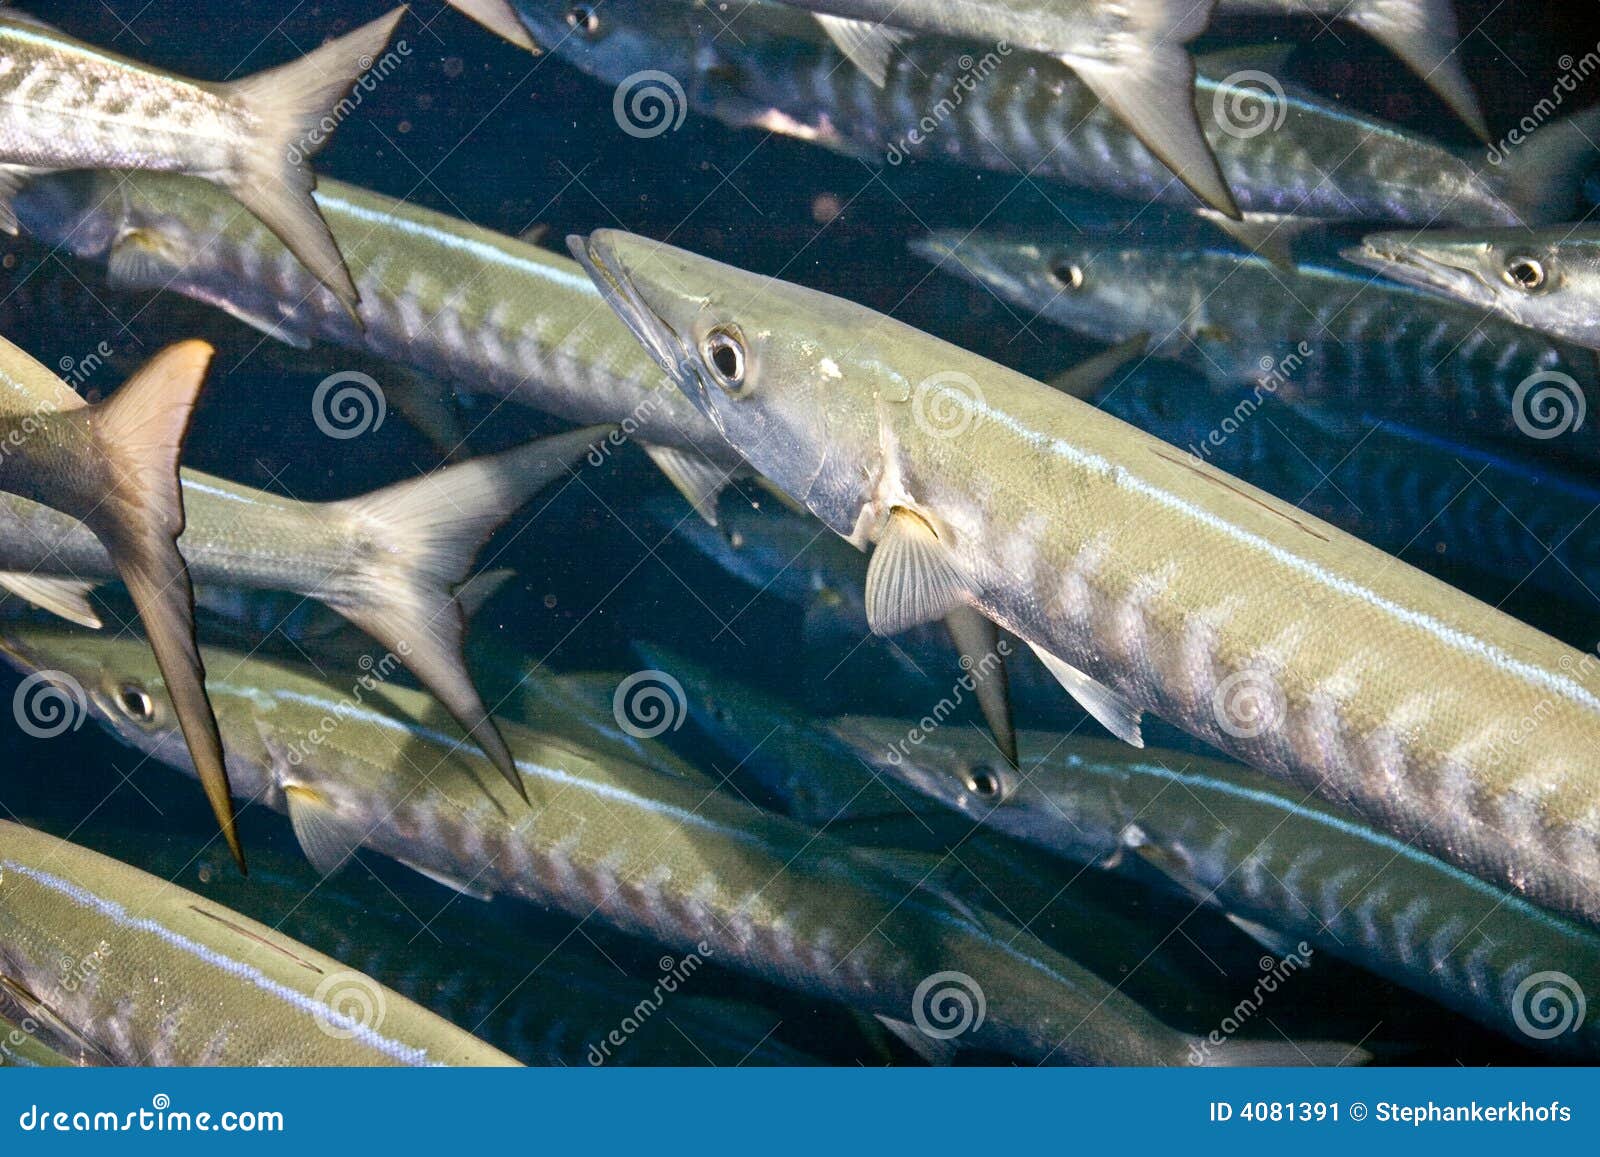 河流浅滩中的大梭子鱼高清摄影大图-千库网